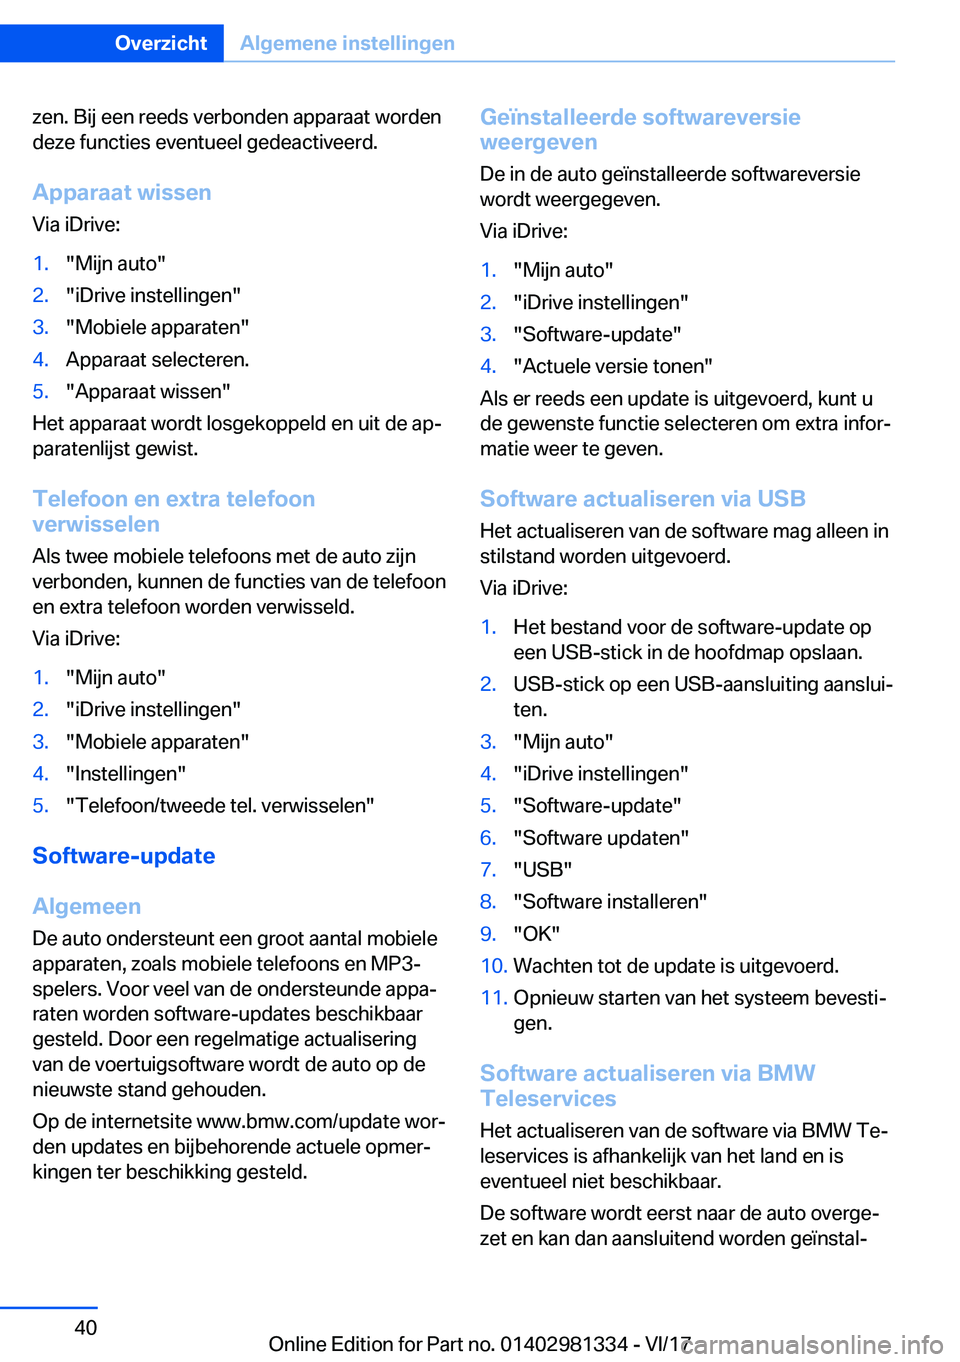 BMW X4 2018  Instructieboekjes (in Dutch) �z�e�n�.� �B�i�j� �e�e�n� �r�e�e�d�s� �v�e�r�b�o�n�d�e�n� �a�p�p�a�r�a�a�t� �w�o�r�d�e�n�d�e�z�e� �f�u�n�c�t�i�e�s� �e�v�e�n�t�u�e�e�l� �g�e�d�e�a�c�t�i�v�e�e�r�d�.
�A�p�p�a�r�a�a�t��w�i�s�s�e�n �V�i